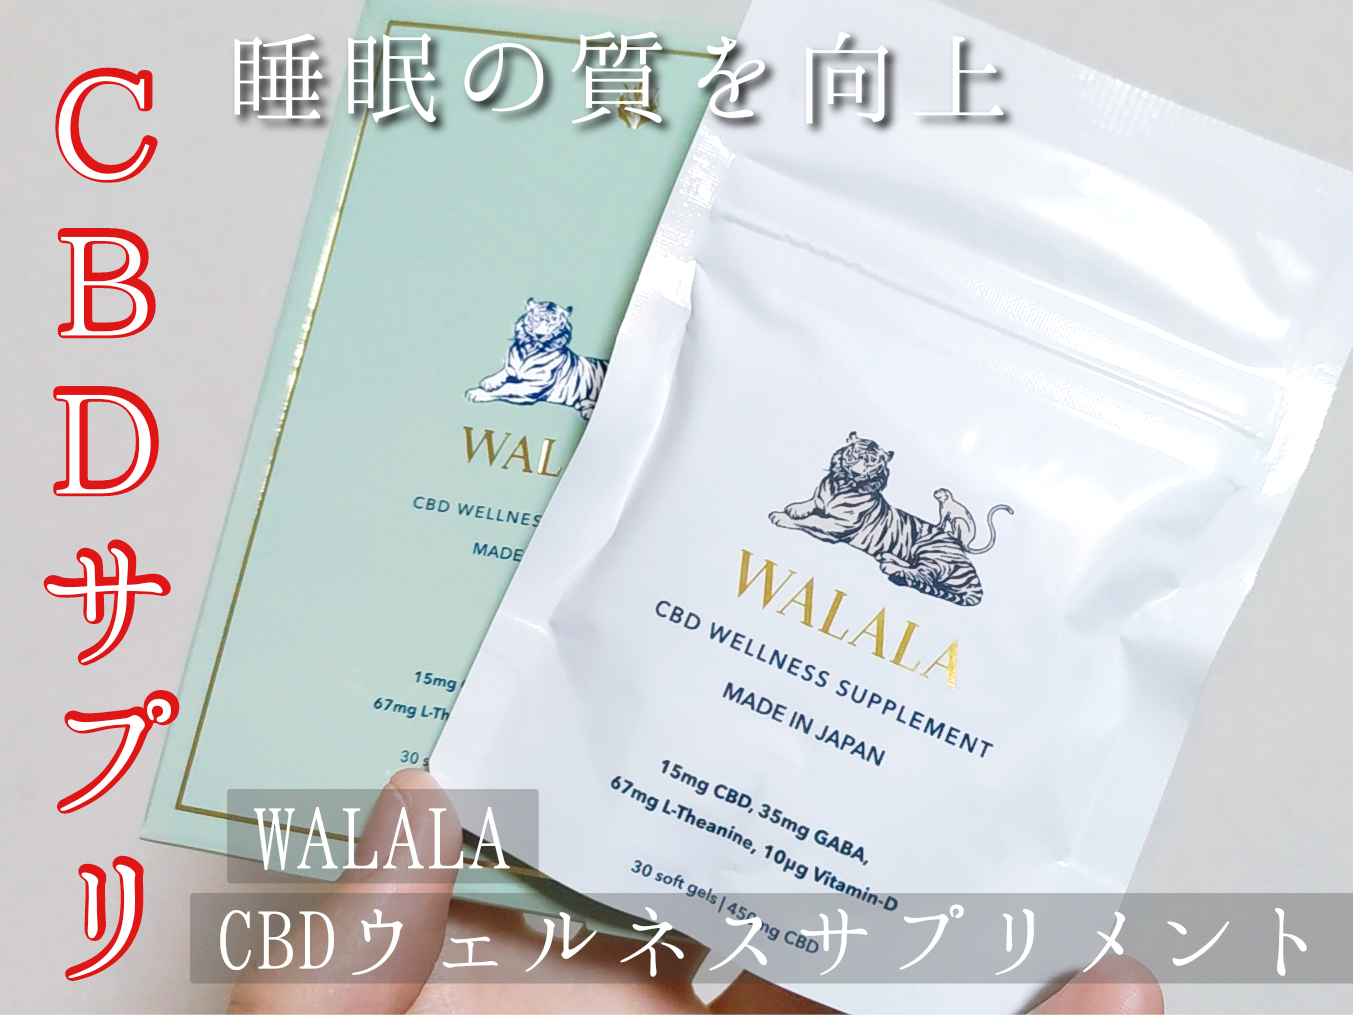 WALALA(ワララ) CBD ウェルネスサプリメントに関する優亜さんの口コミ画像1